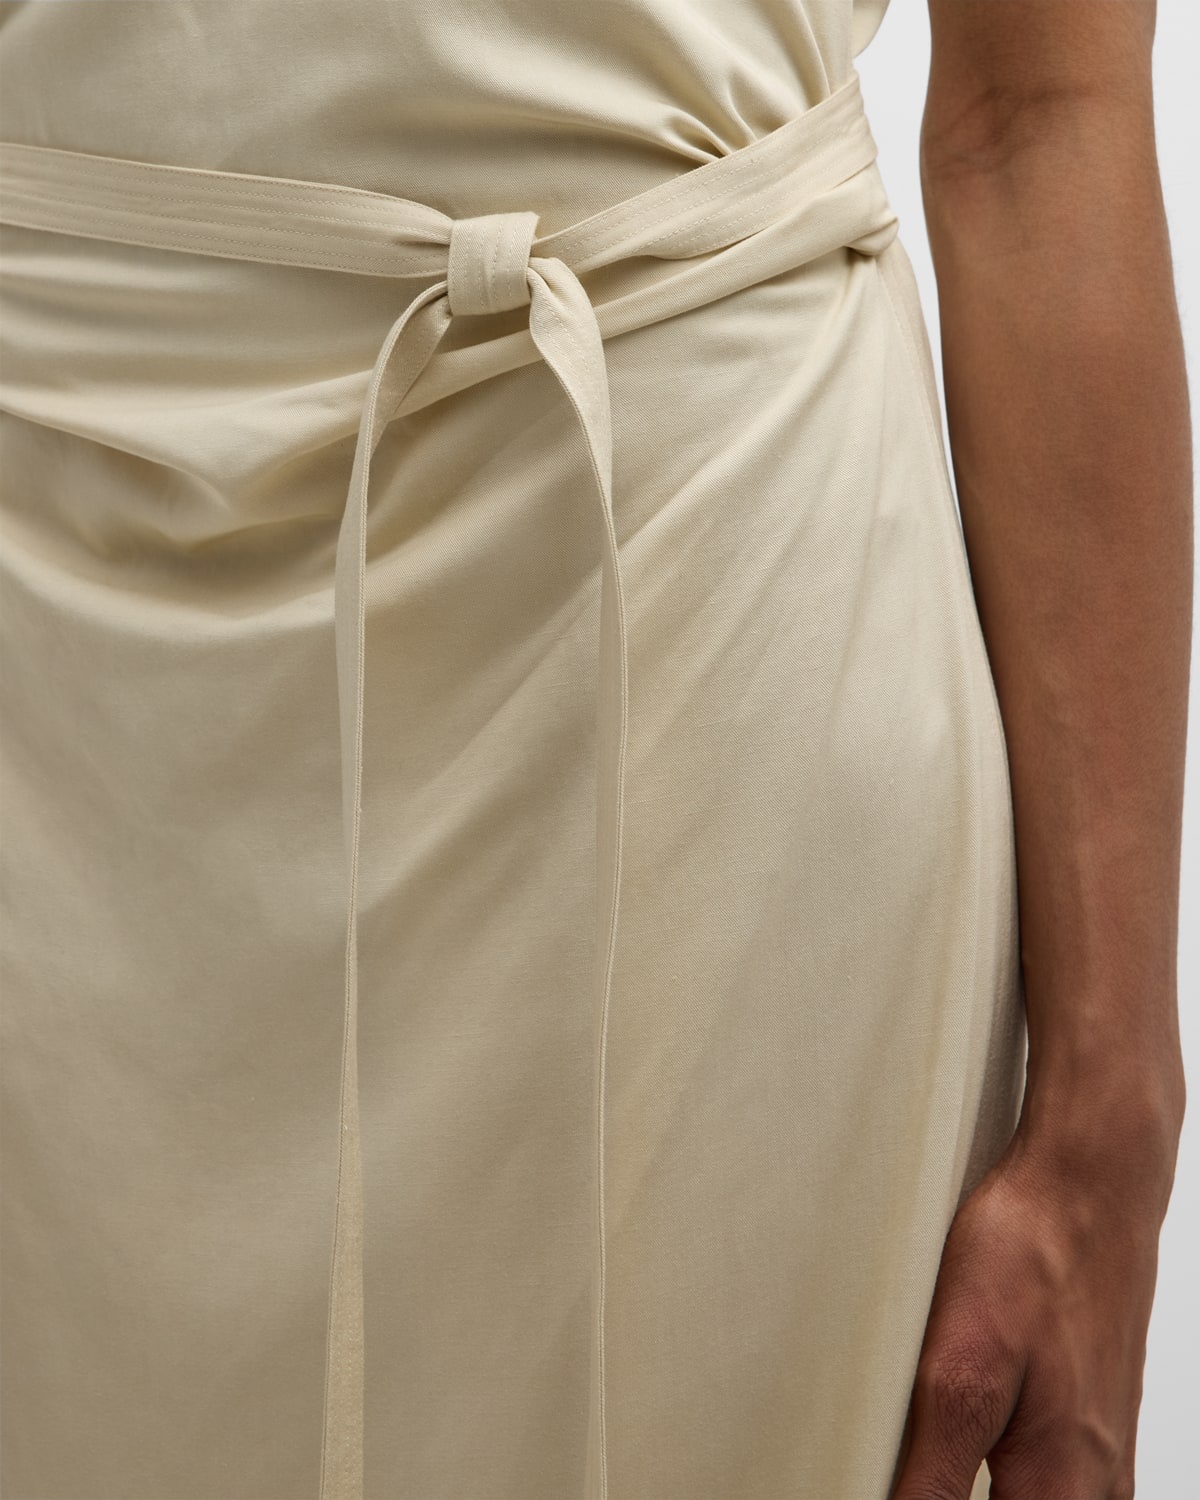 Ruched Sleeveless Tie-Waist Fluid Maxi Dress - 5